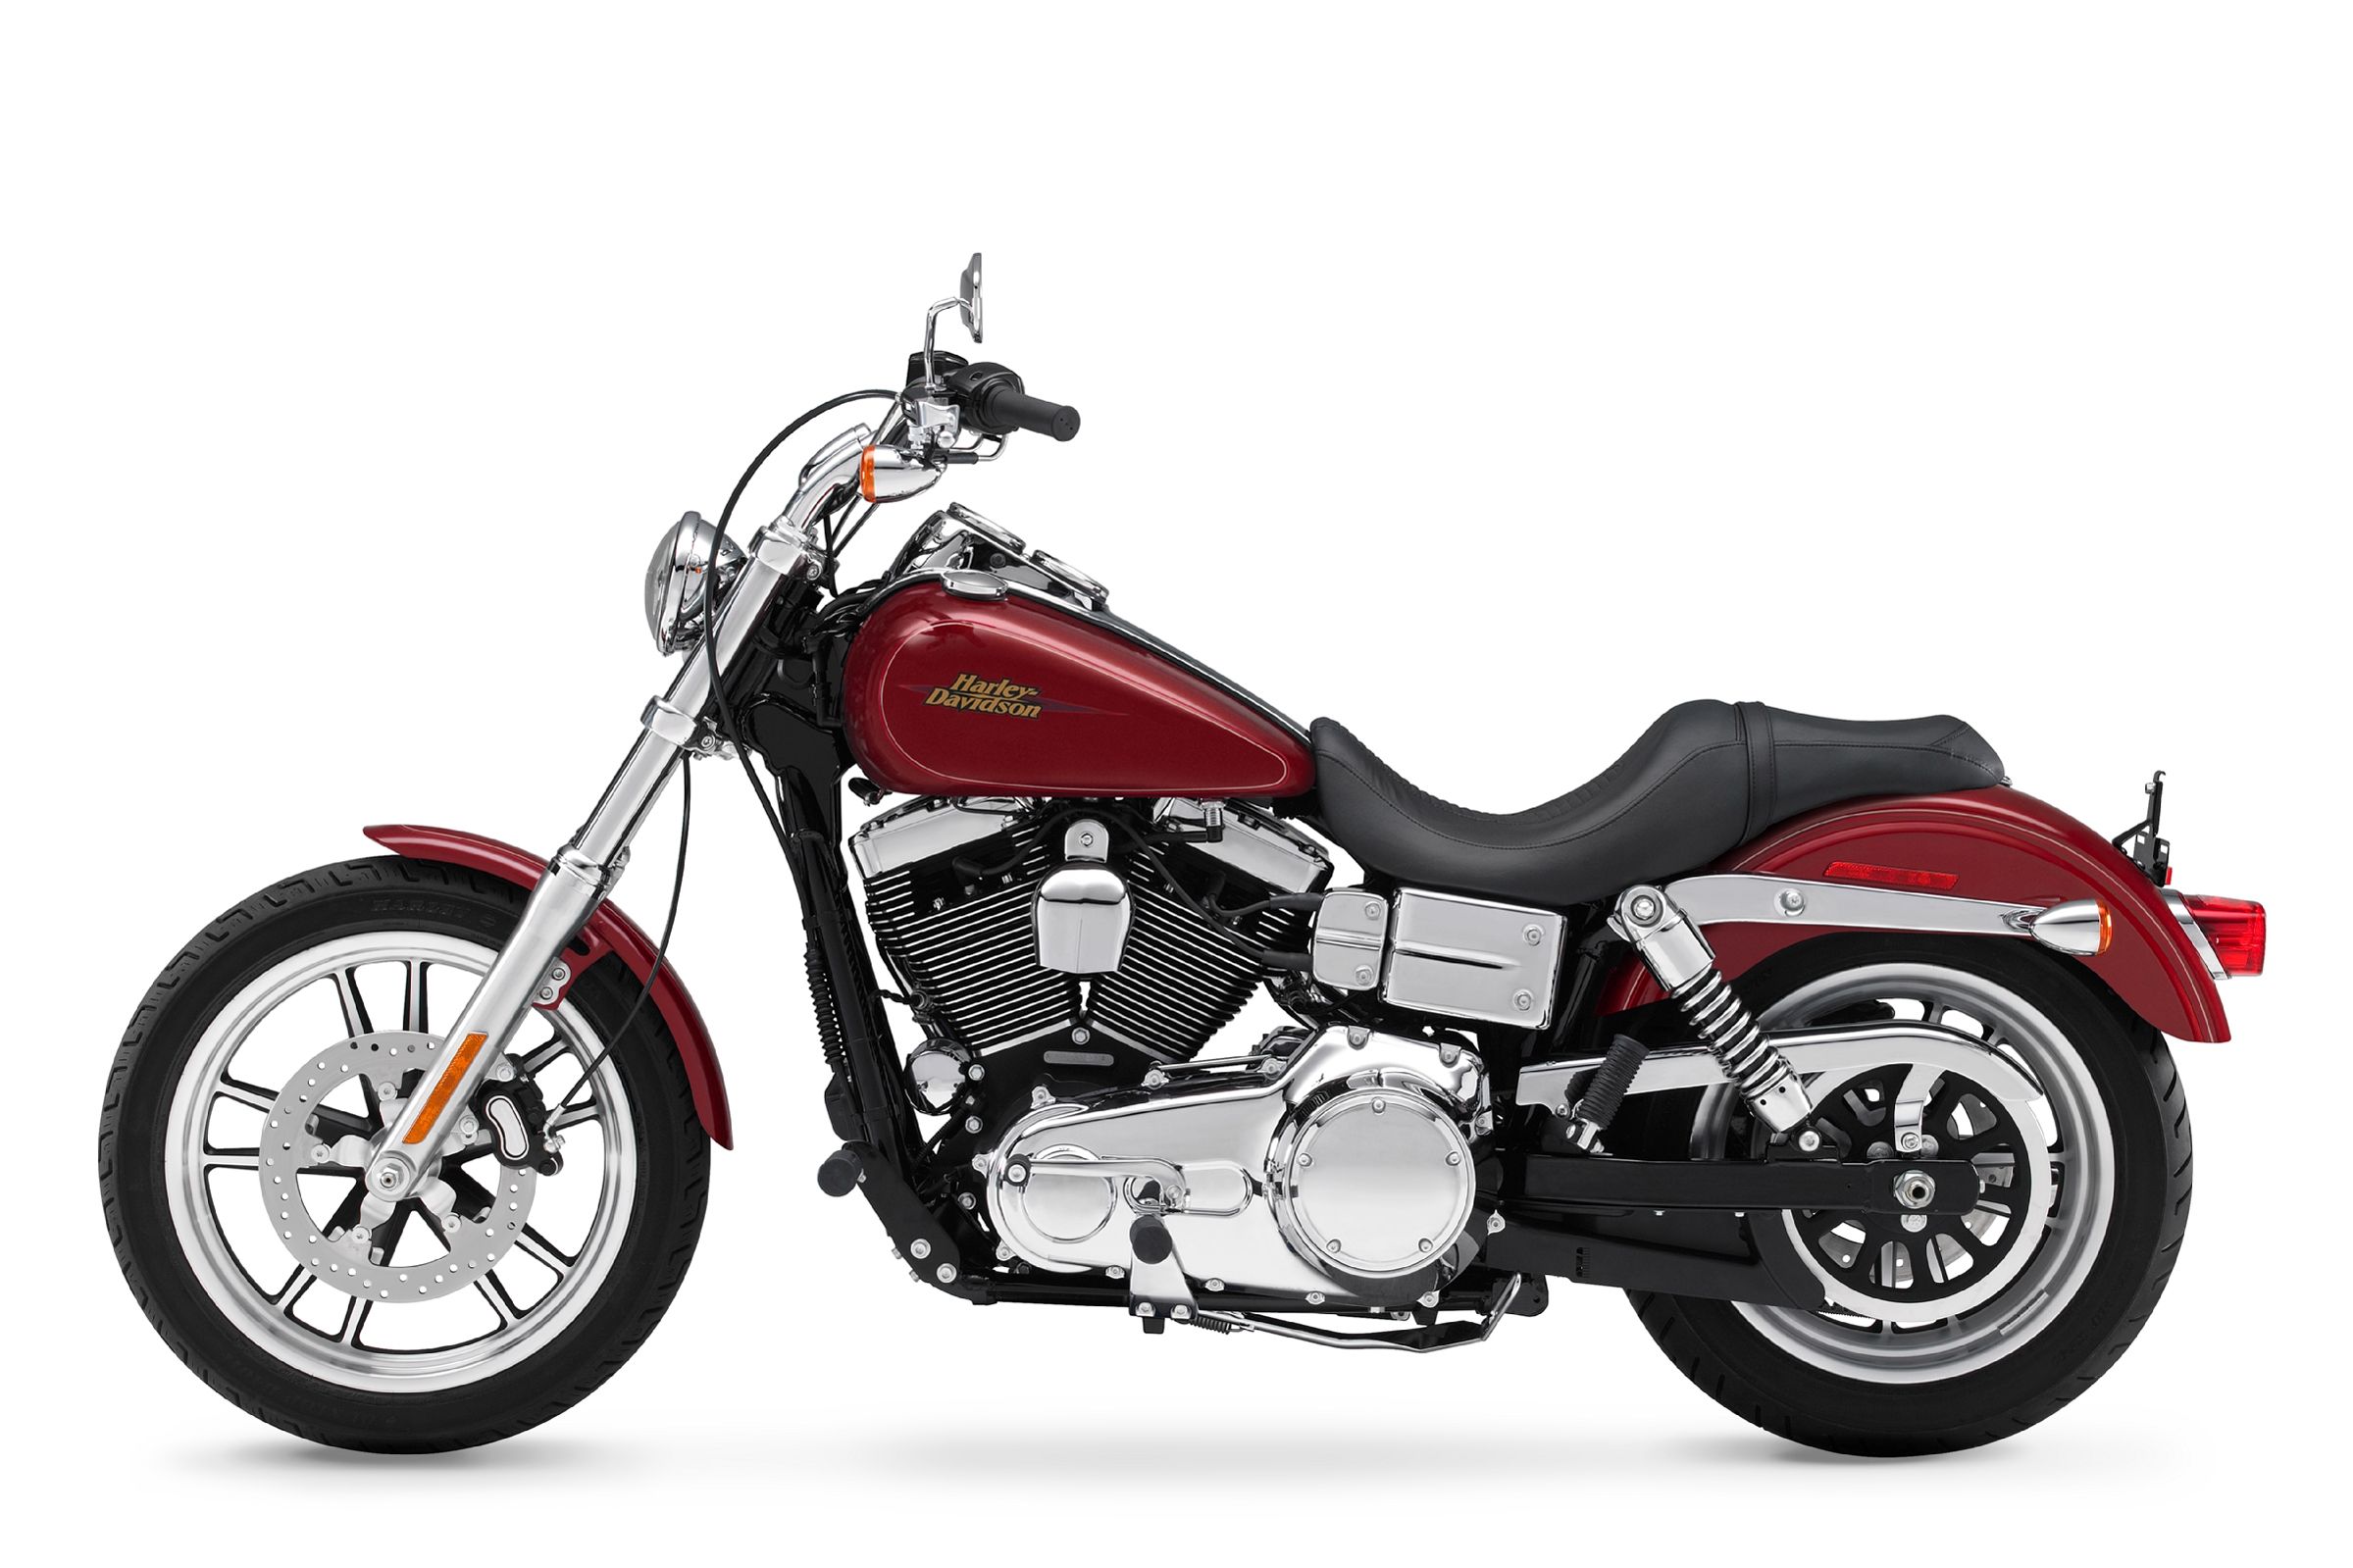  2009 Harley-Davidson Dyna Low Rider